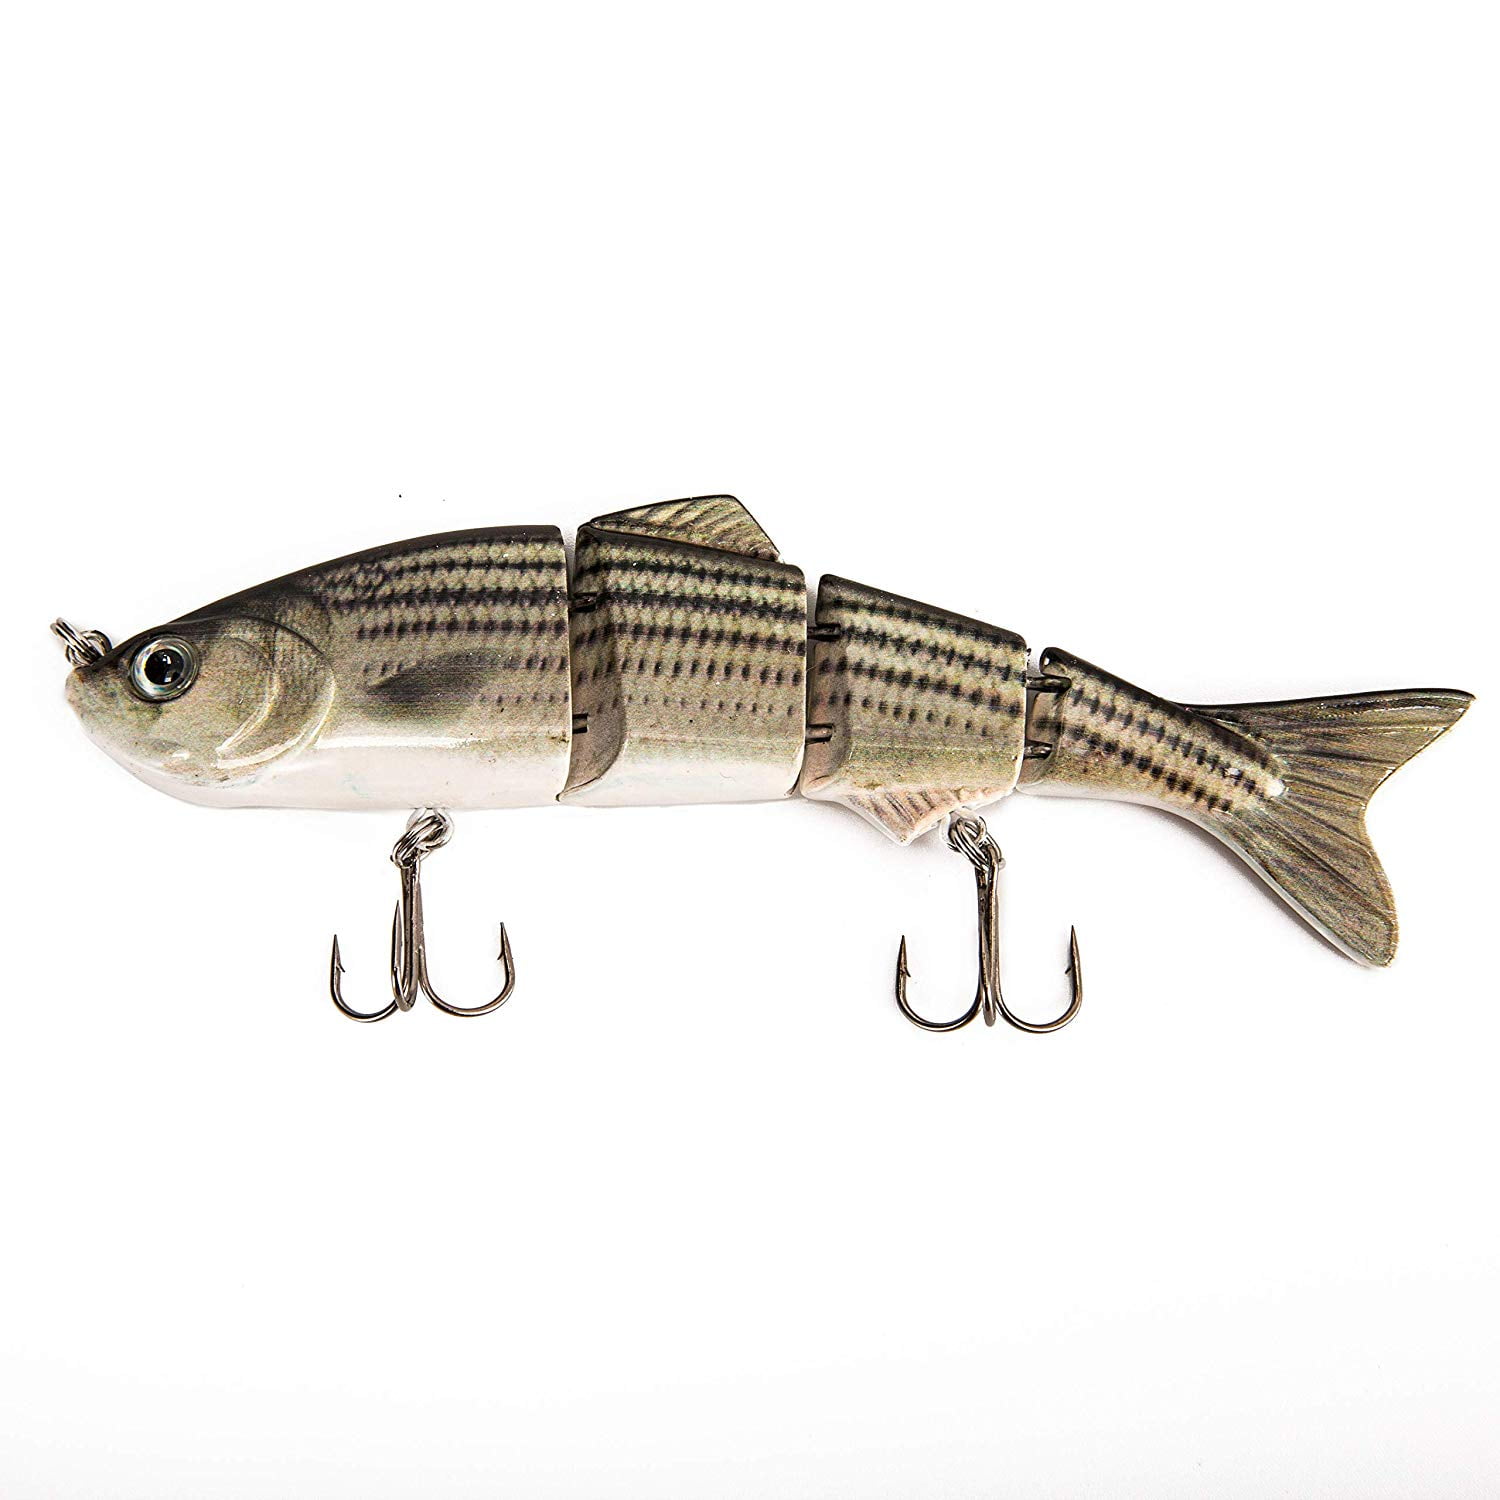 Multi Jointed Fishing Lure Lifelike Swimbait Pike Bass Trout Salmon Carp Bait. 